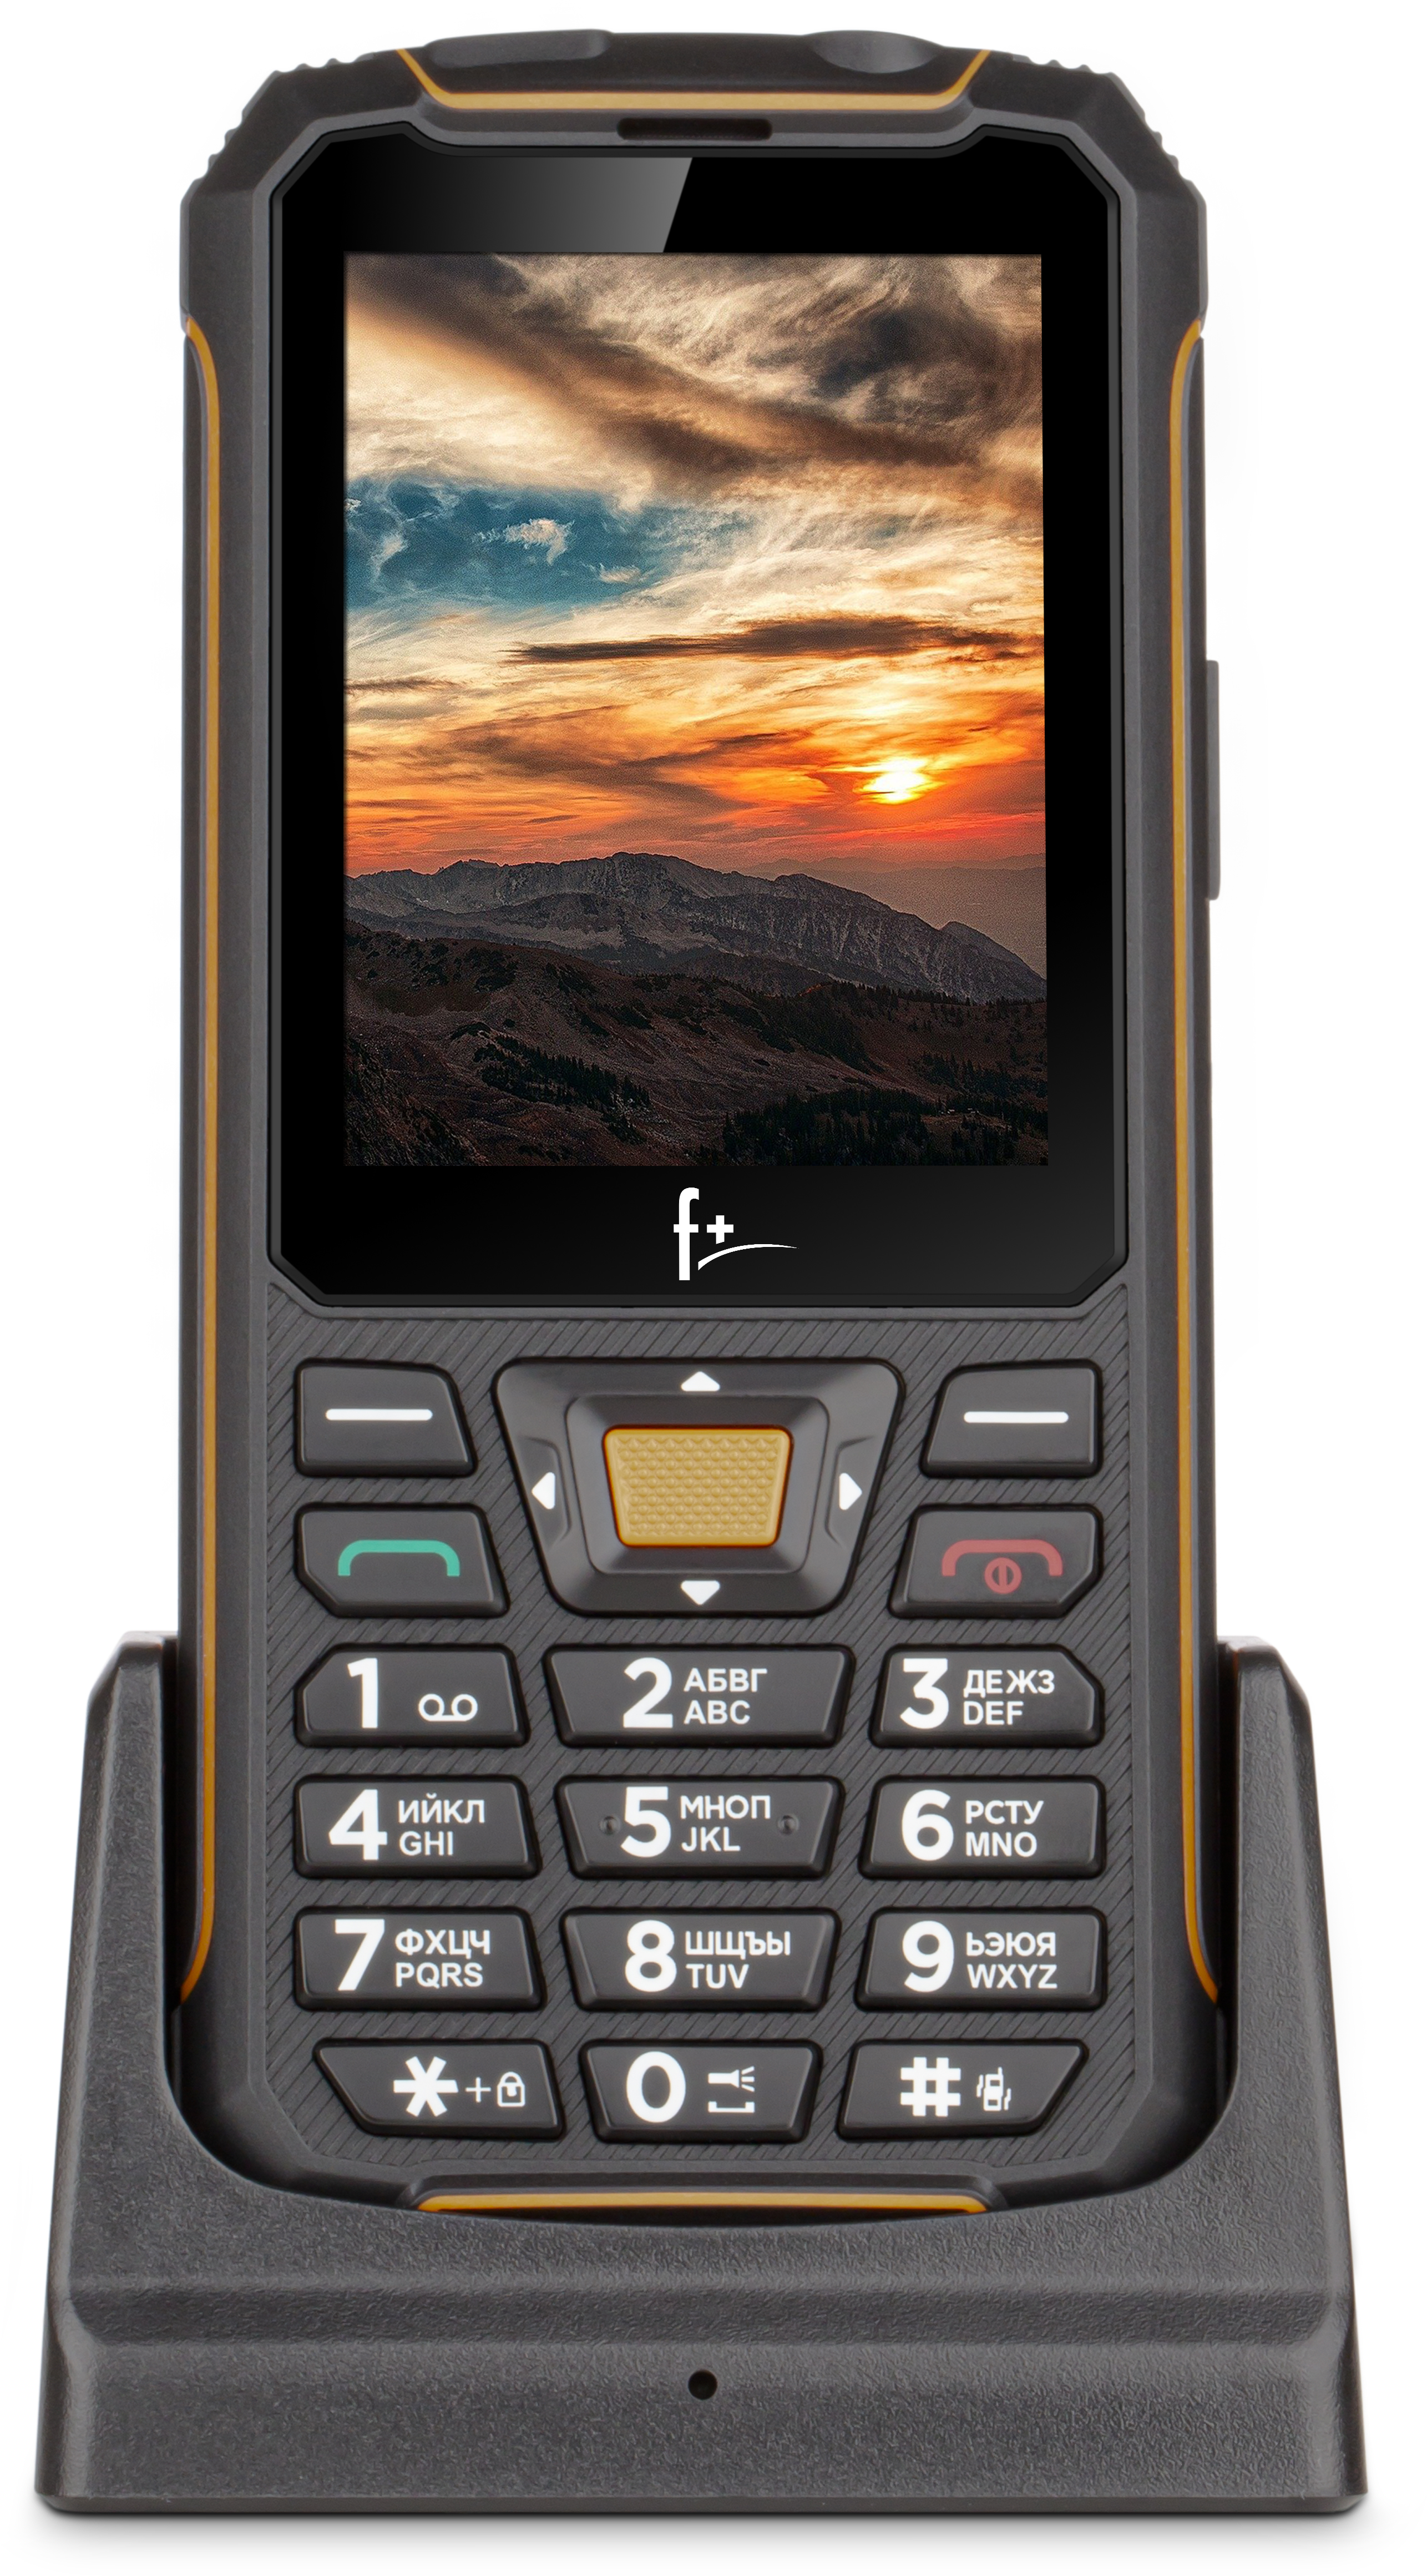 Мобильный телефон f+ f280 Black. Телефон f+ r280c Black-Orange. Fly r280. Fly f r280.